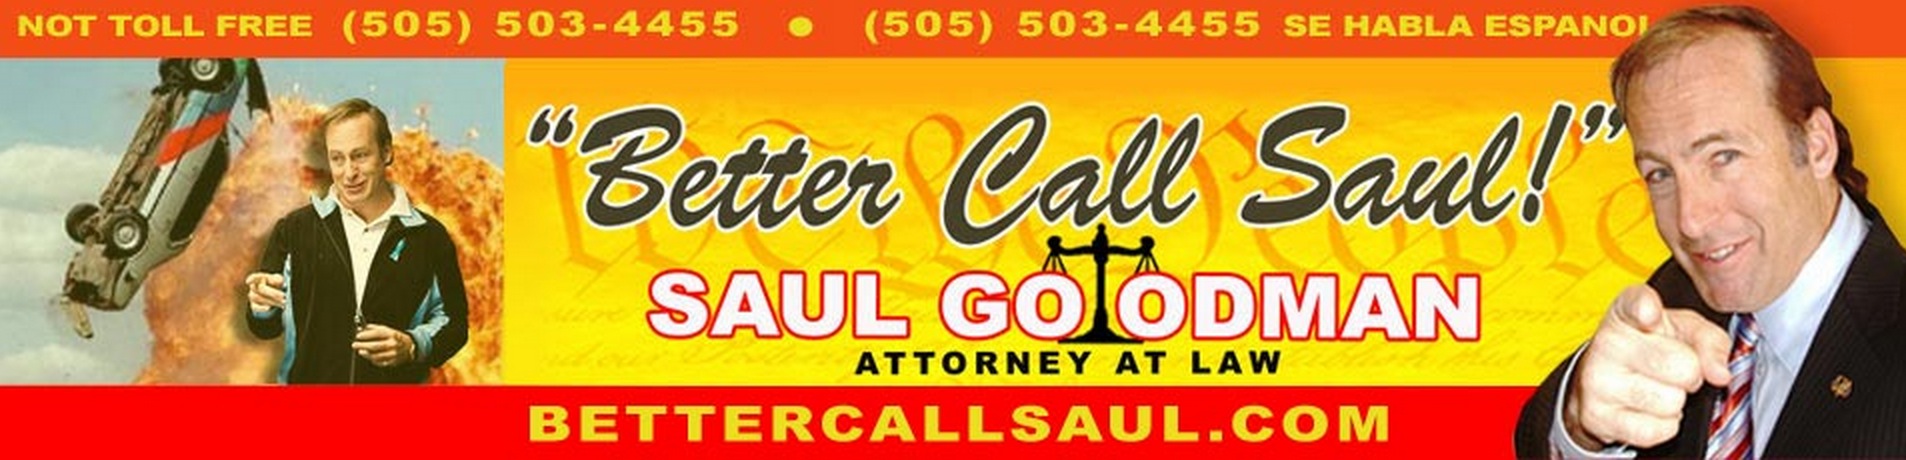 Better call saul serie TV